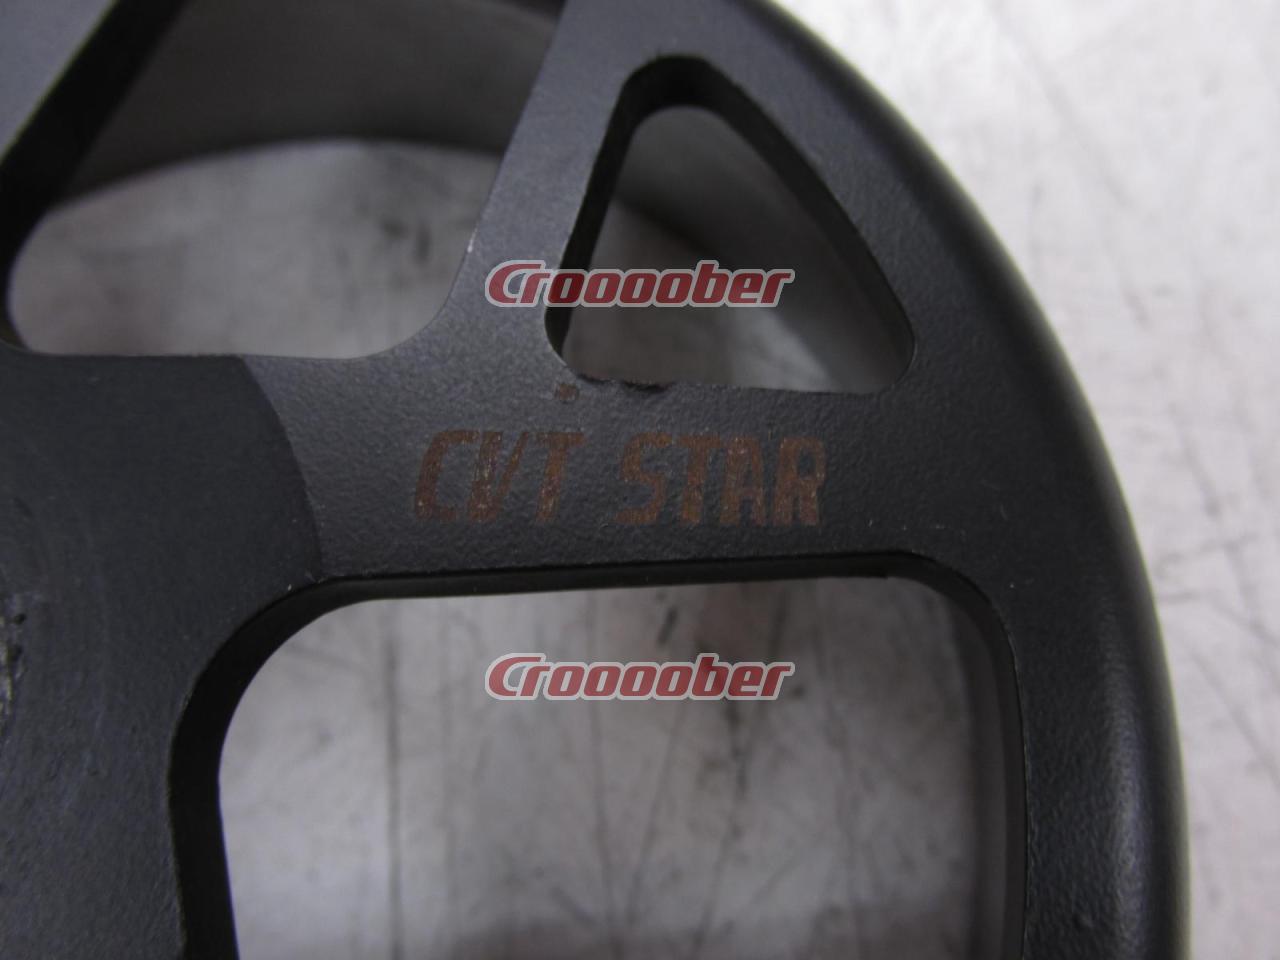 CVT-STAR クラッチアウター鍛造669g 【シグナスX・BWS125】 | 駆動系 